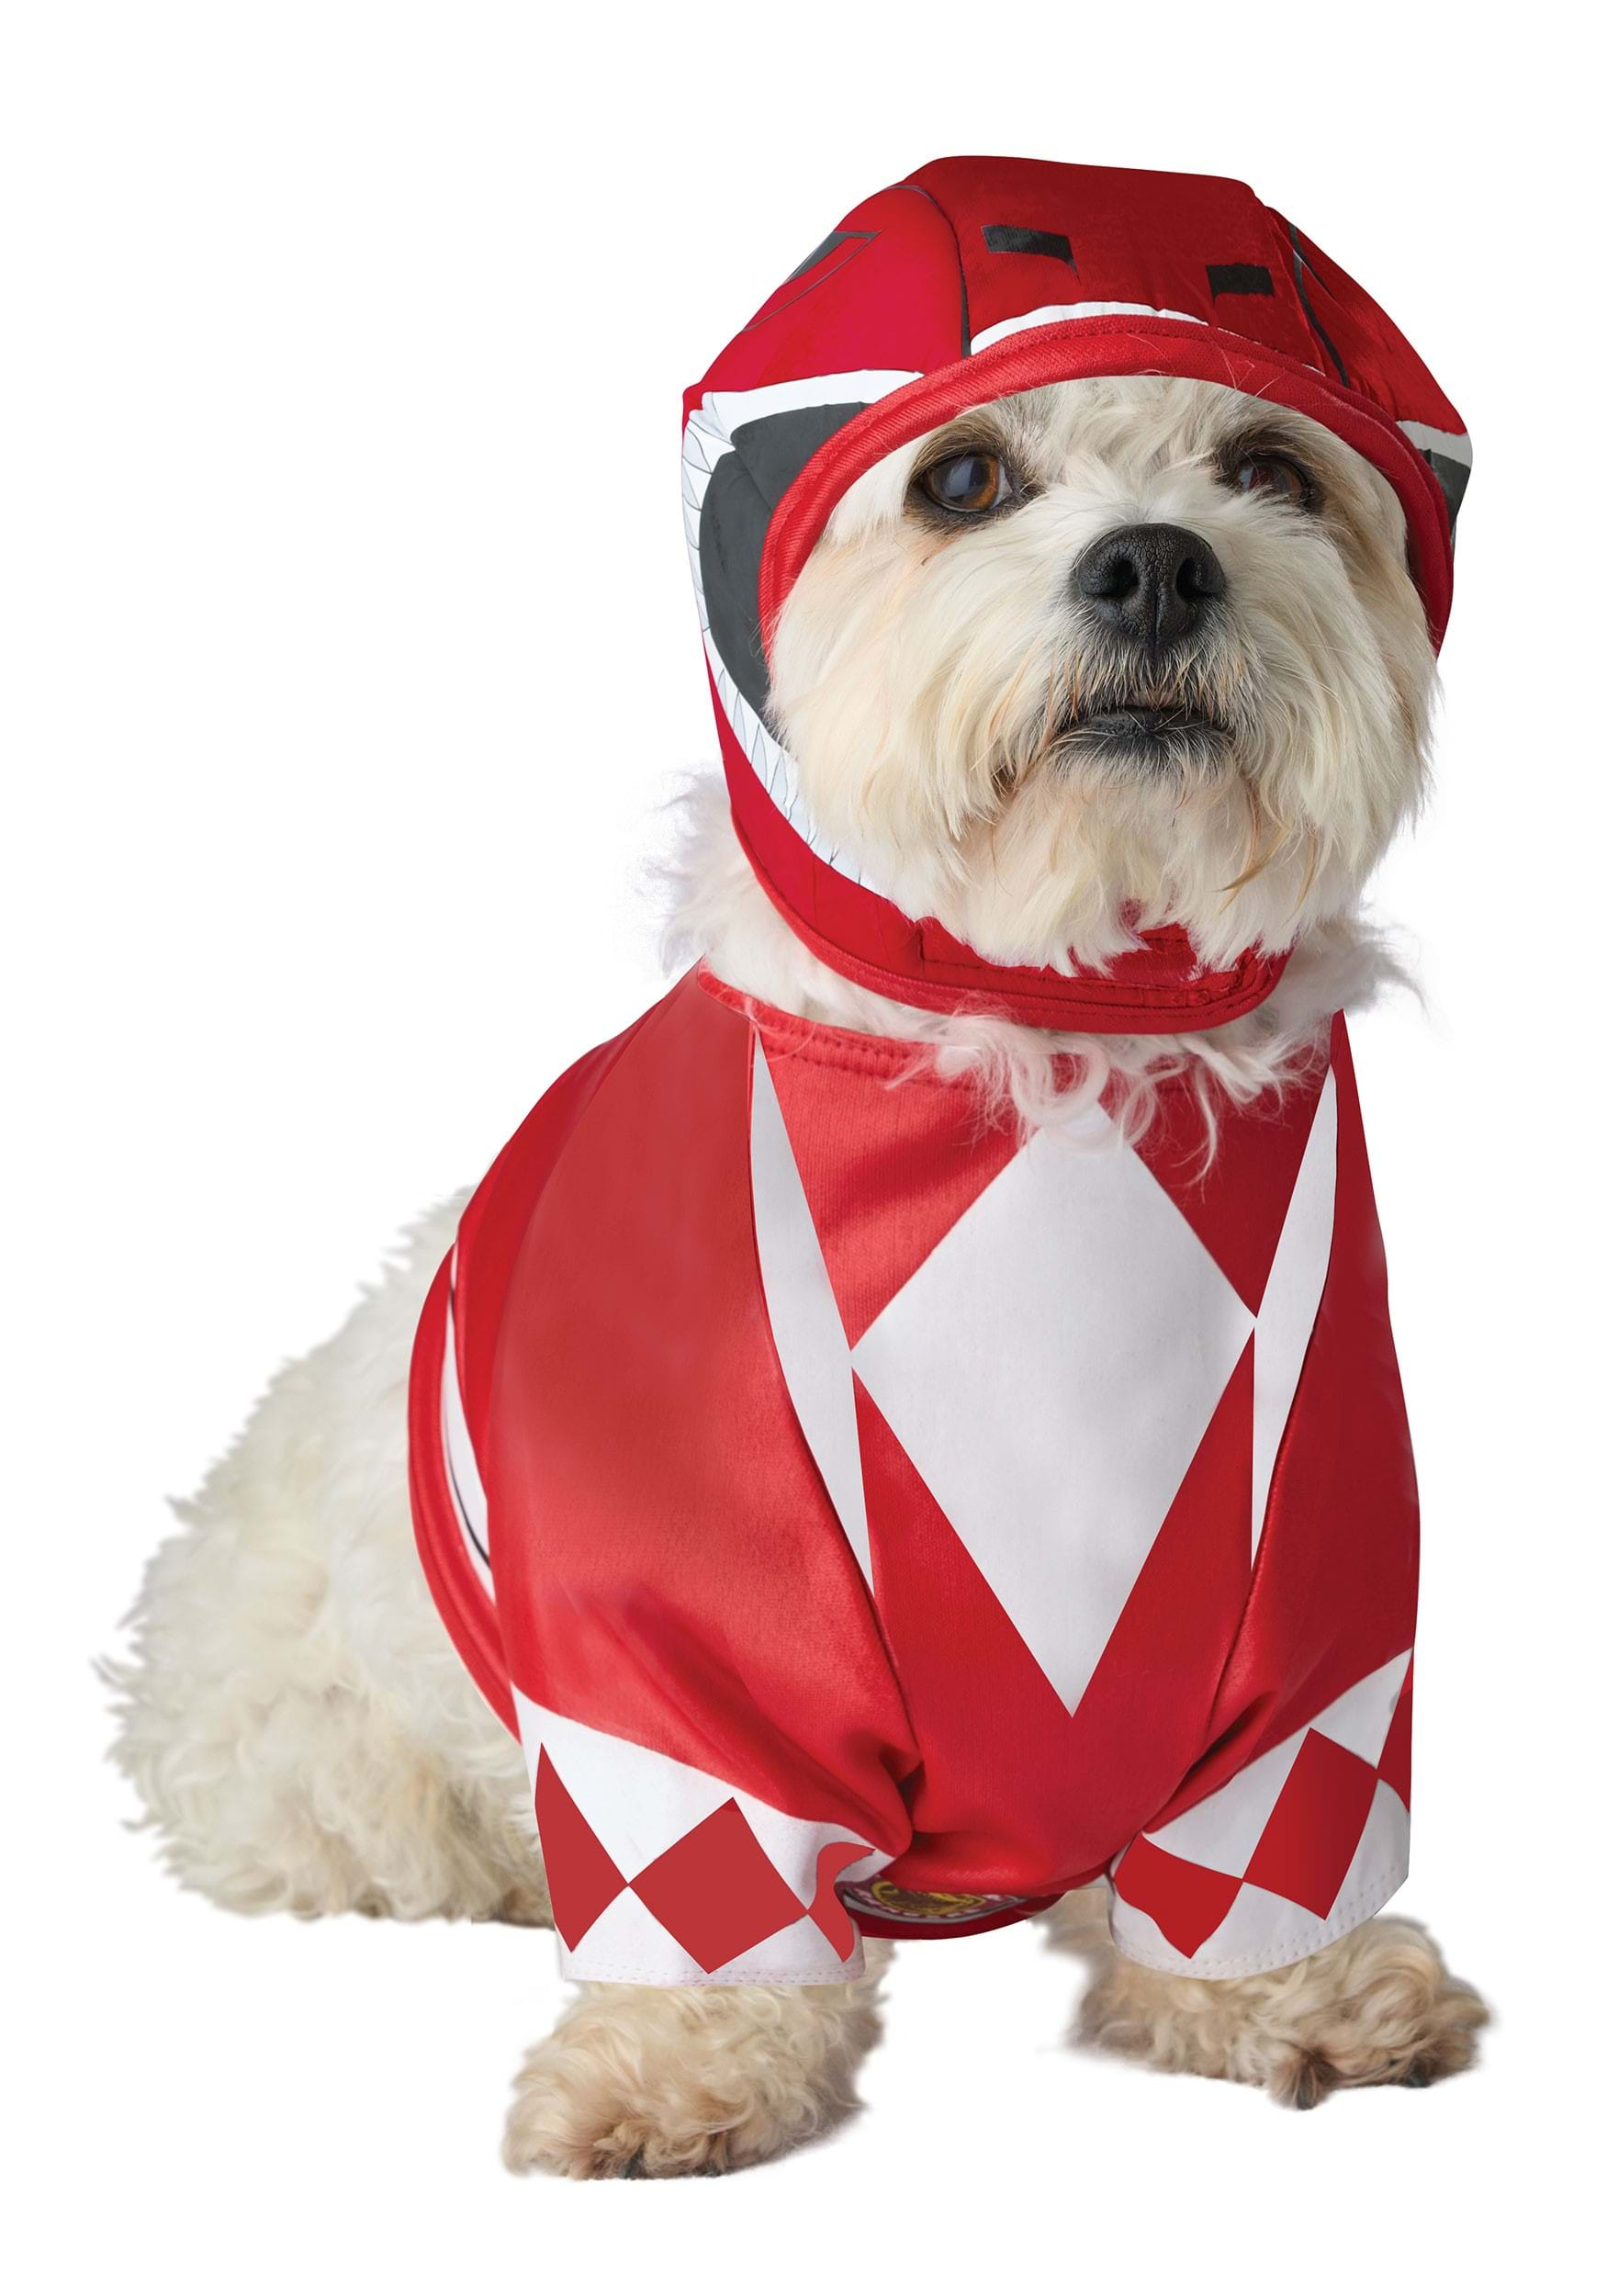 Pet Power Rangers Red Ranger Costume